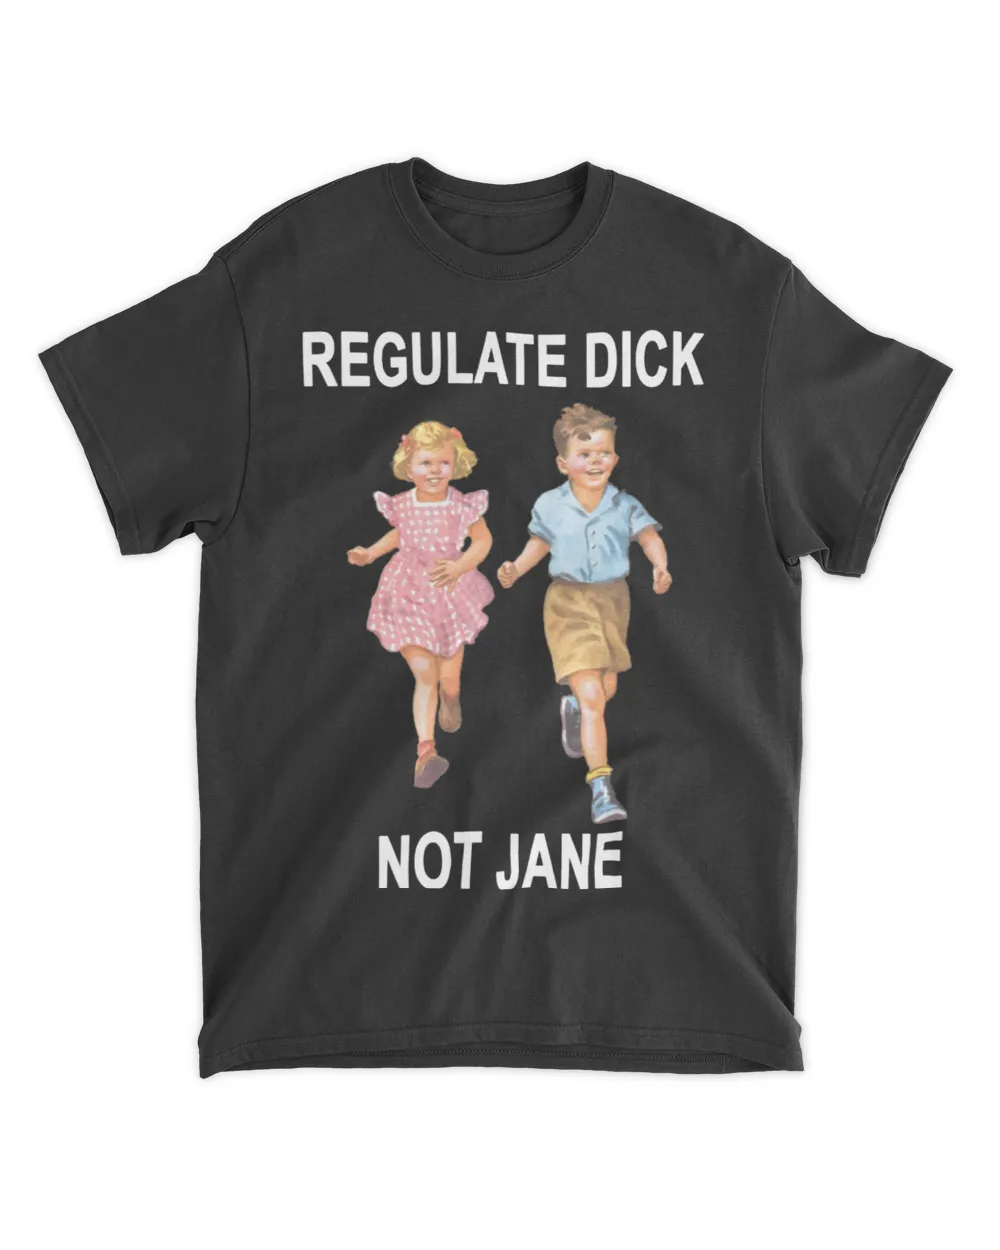  Regulate dick not Jane shirt